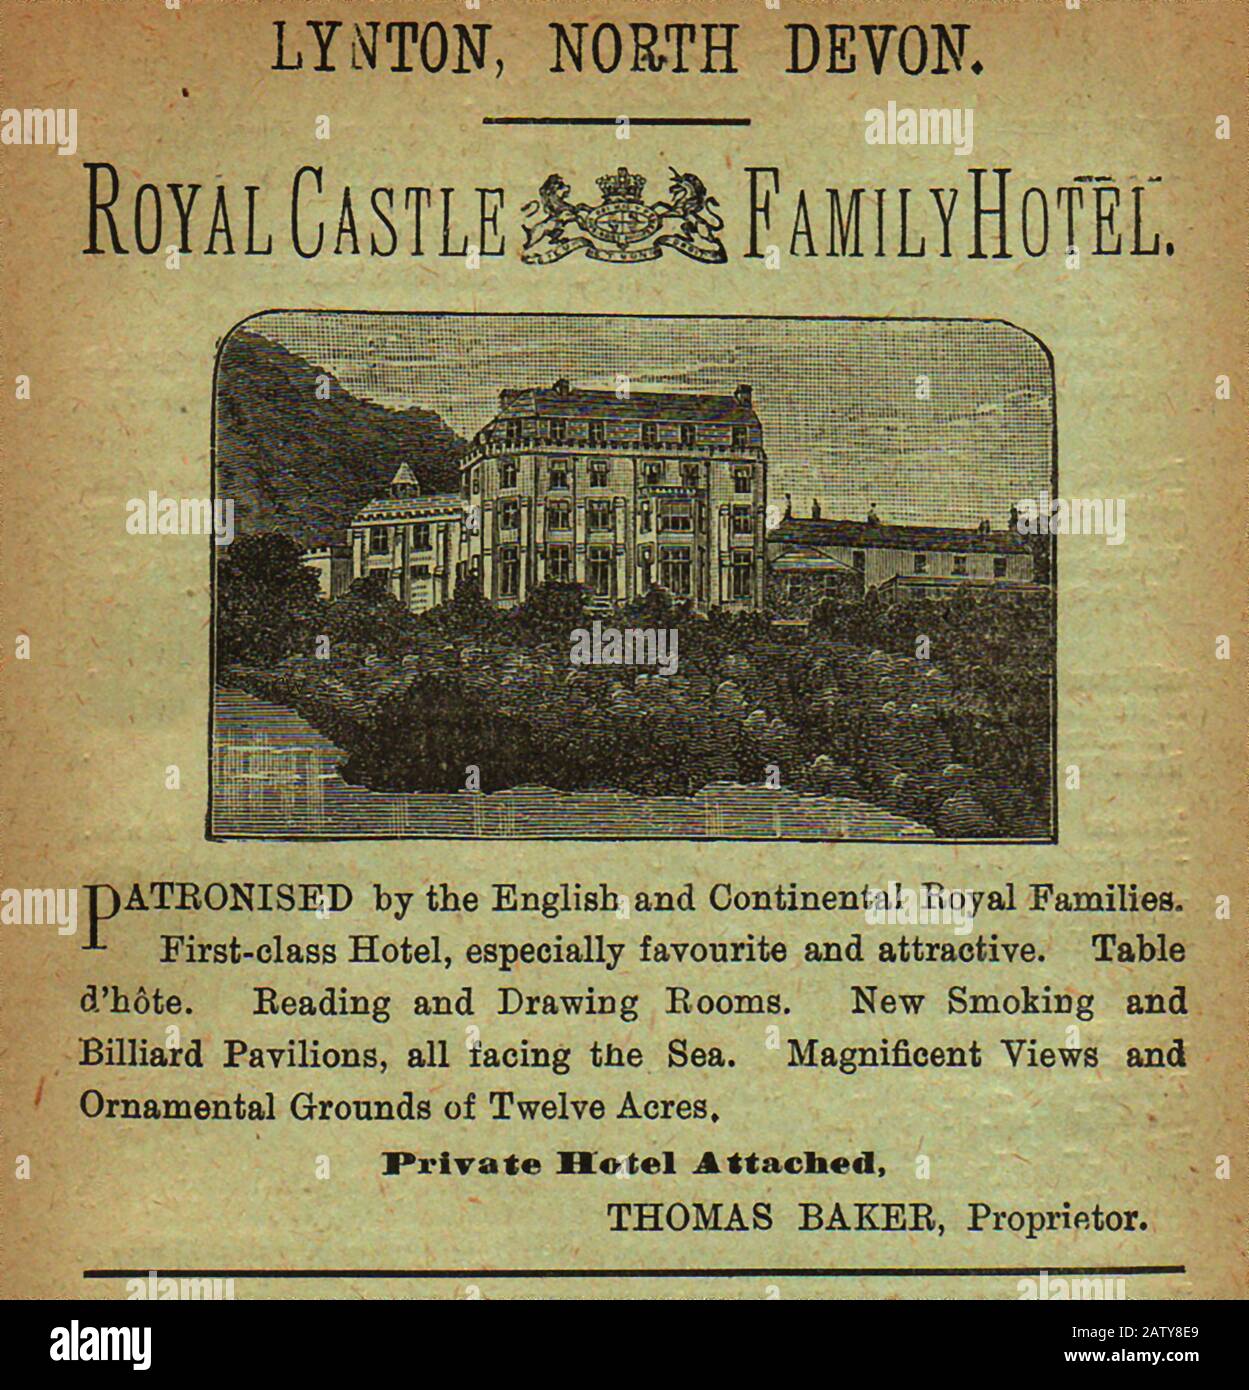 1890 guida turistica britannica per Royal Castle and Family Hotel, Lynton, North Devon, Regno Unito (Patronizzato da Famiglie reali britanniche e continentali) Foto Stock